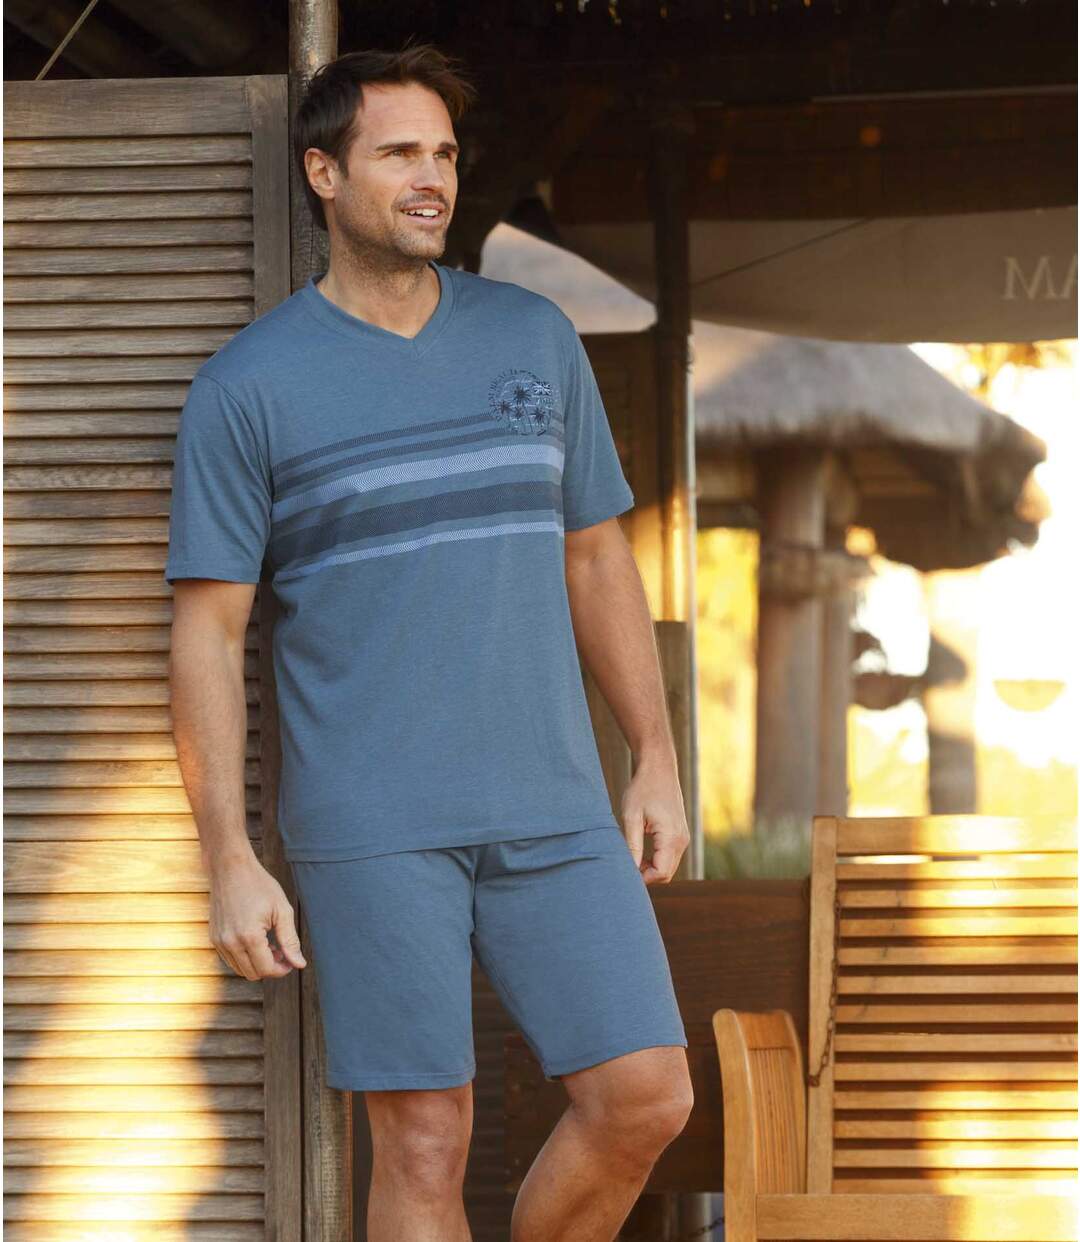 Men's Comfort Short Summer Pyjamas - Mottled Blue Atlas For Men